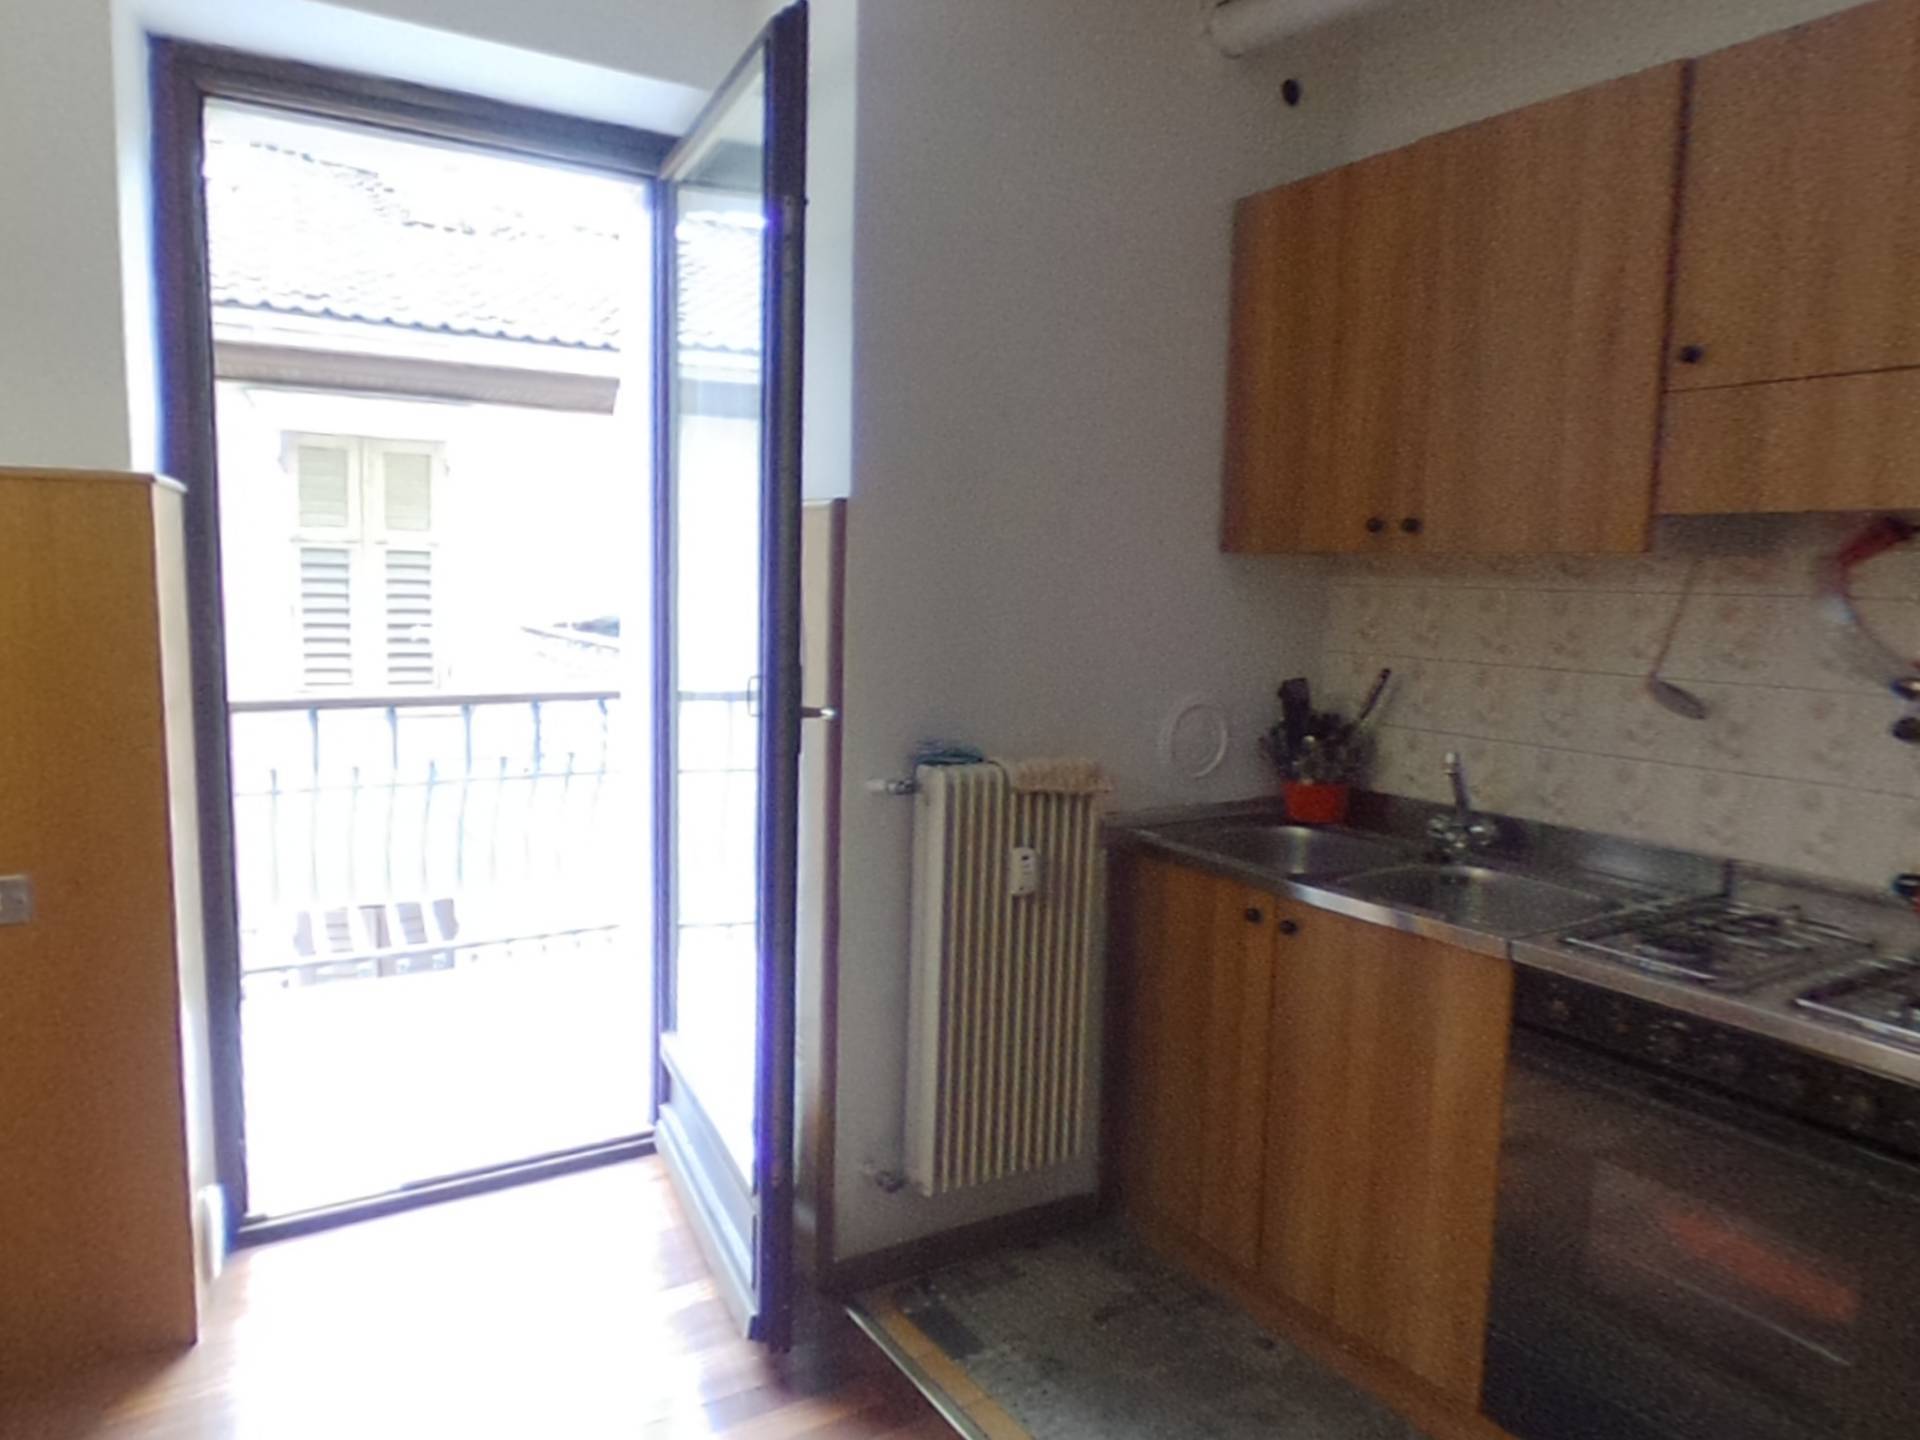 Appartamento in vendita a Cavareno, 3 locali, prezzo € 70.000 | CambioCasa.it